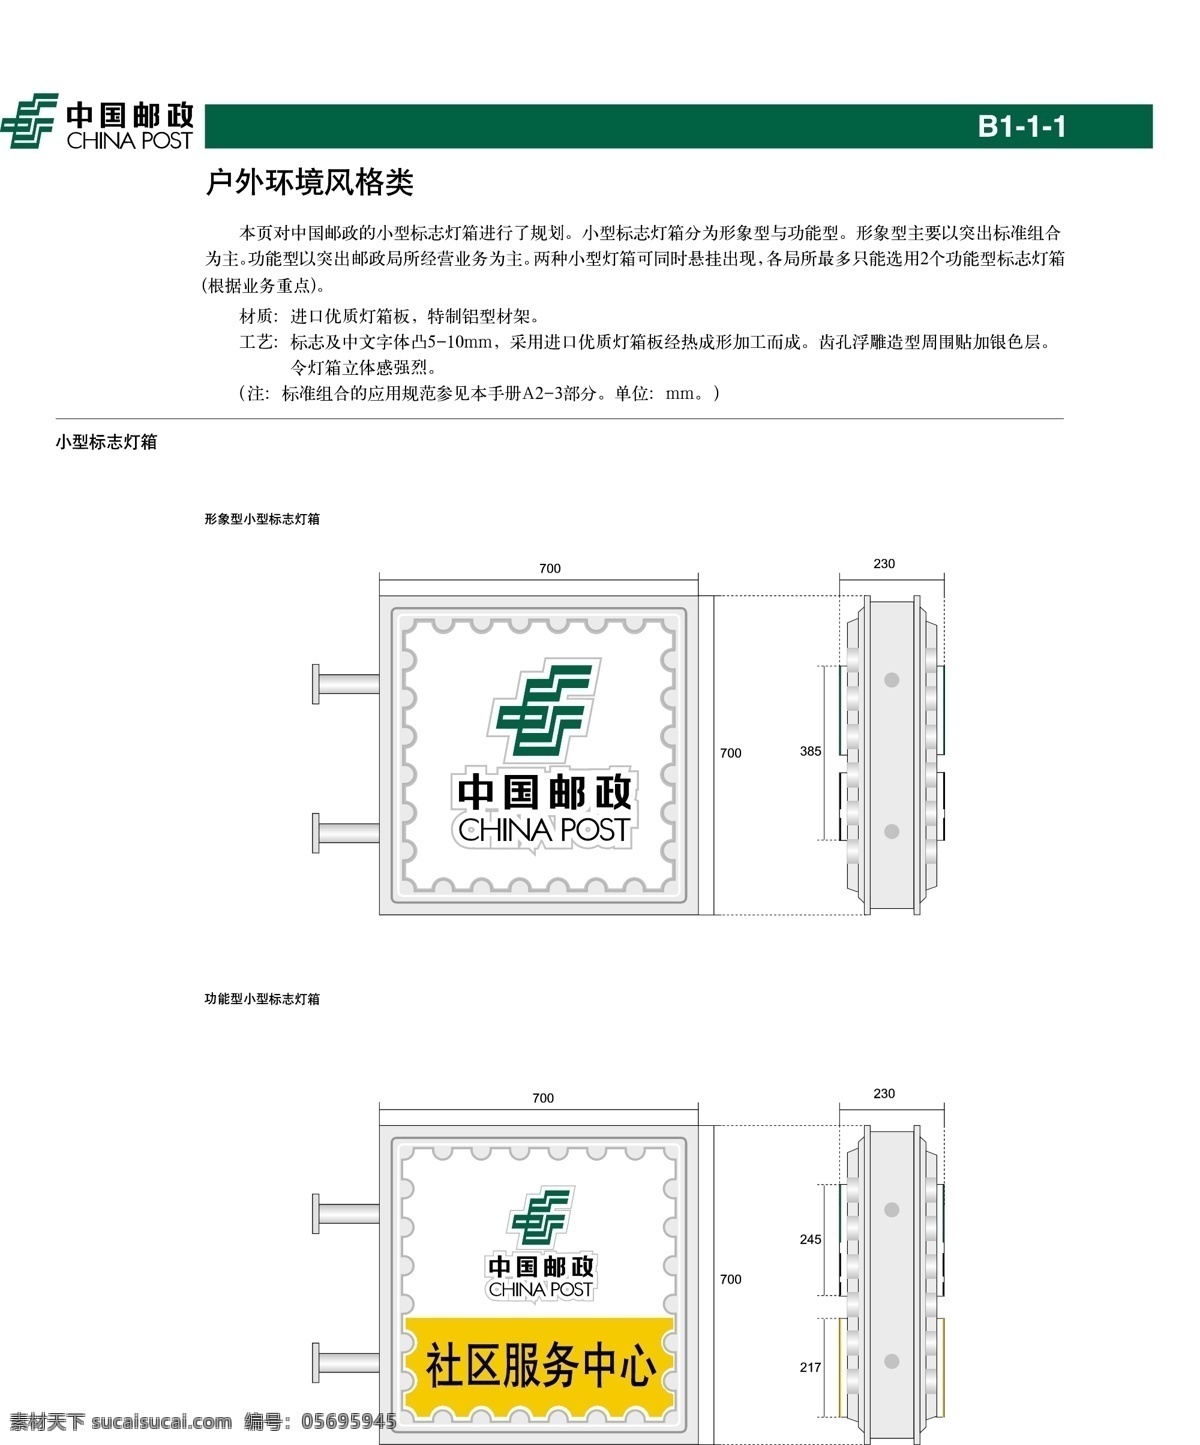 中国 邮政 小型 标志 灯箱 vi设计 模板 设计稿 素材元素 源文件 中国邮政 小型标志灯箱 矢量图